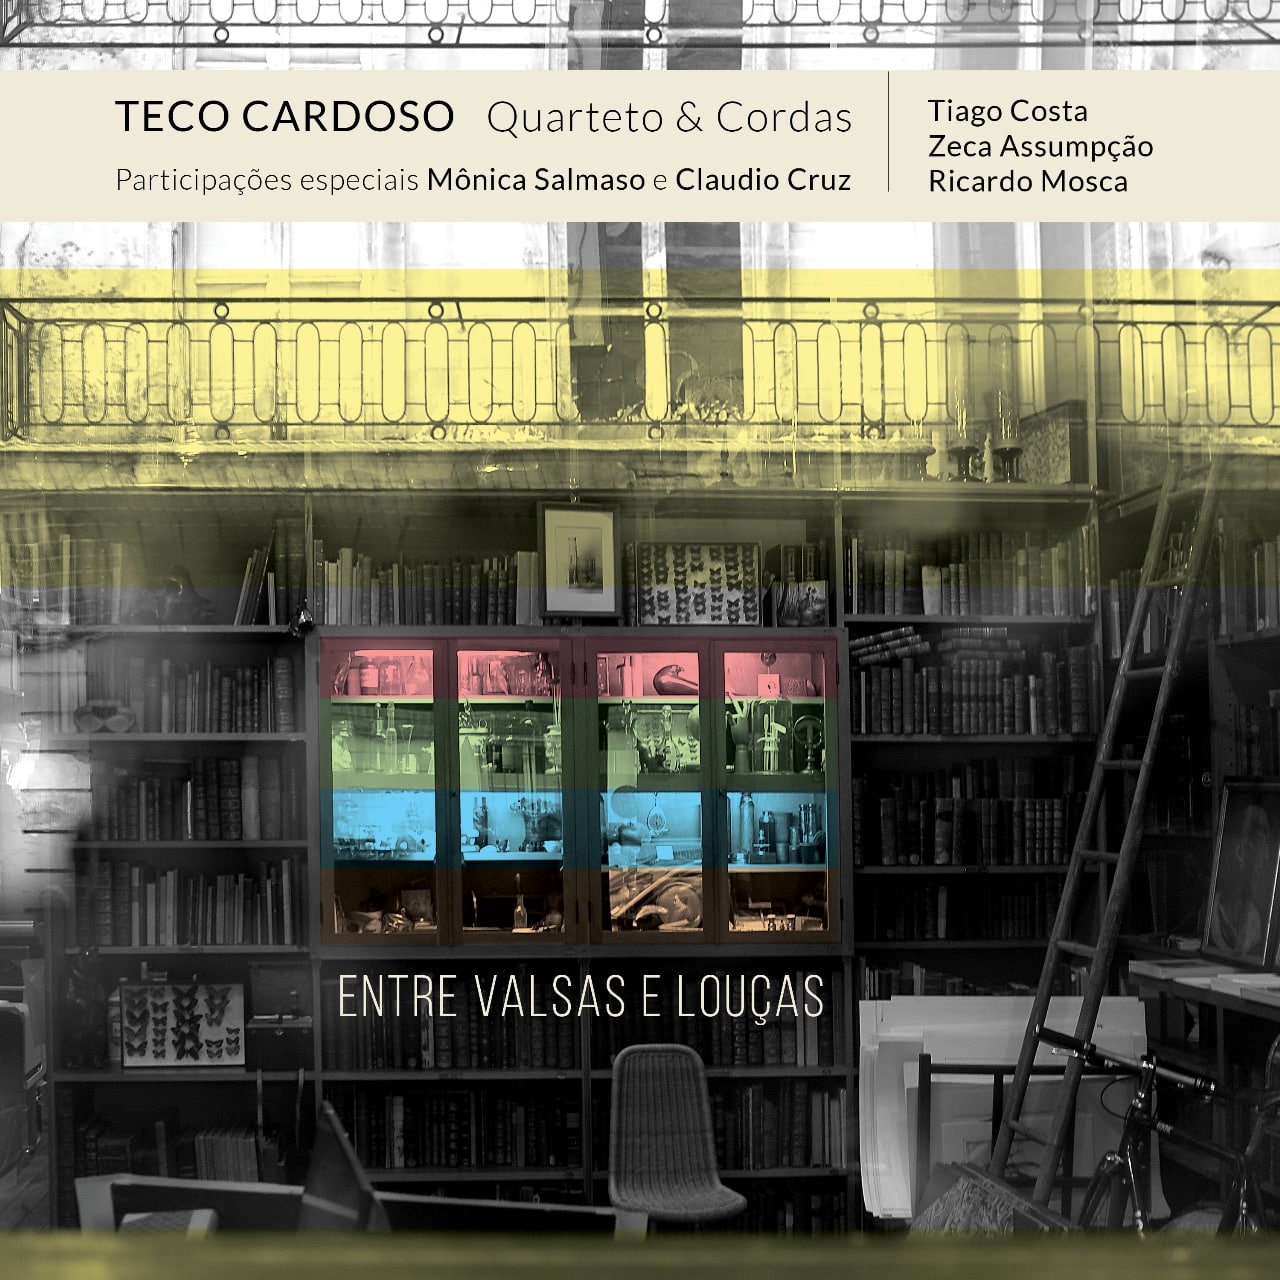 revistaprosaversoearte.com - 'Entre Valsas e Louças', álbum de Teco Cardoso